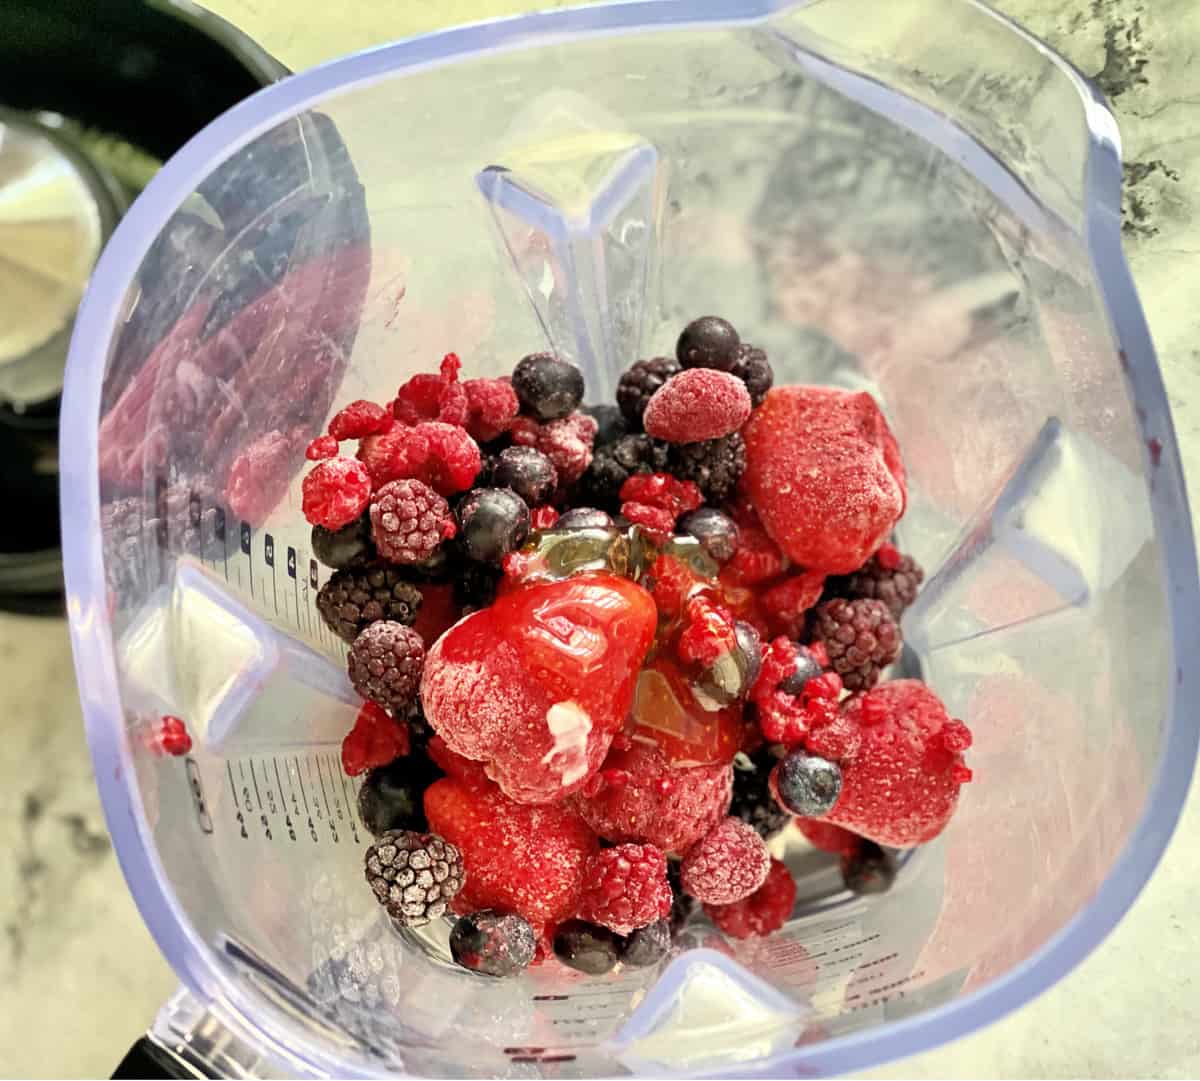 Top view of berries in a blender. 